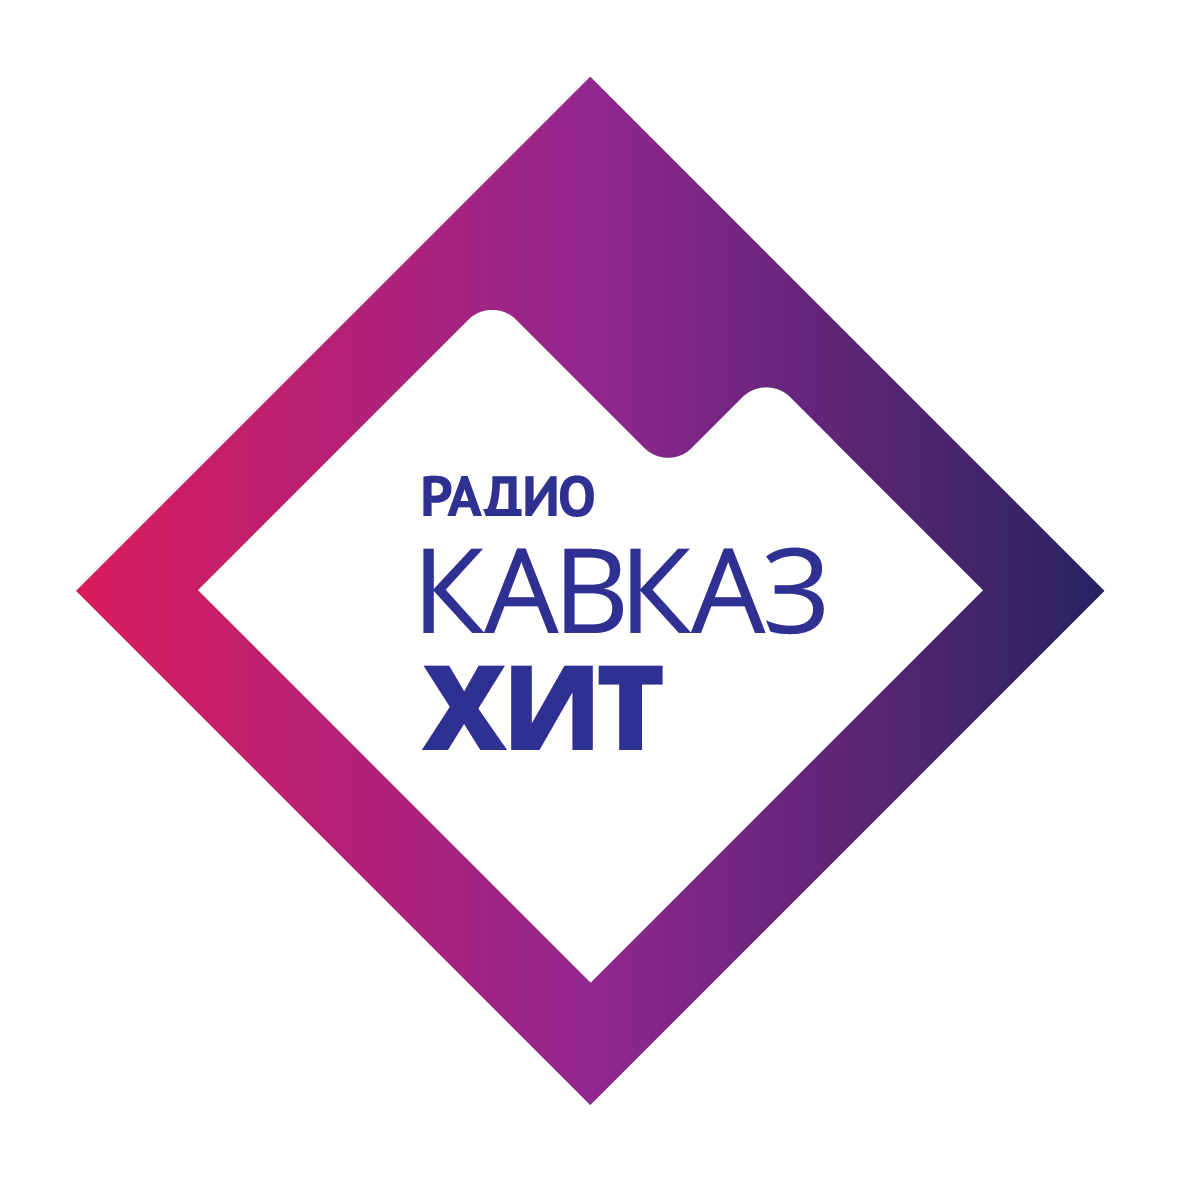 Радио черкесск хит. Радио Кавказ. Радио Кавказ хит. Лого радио Кавказ. Радио Кавказ хит логотип.